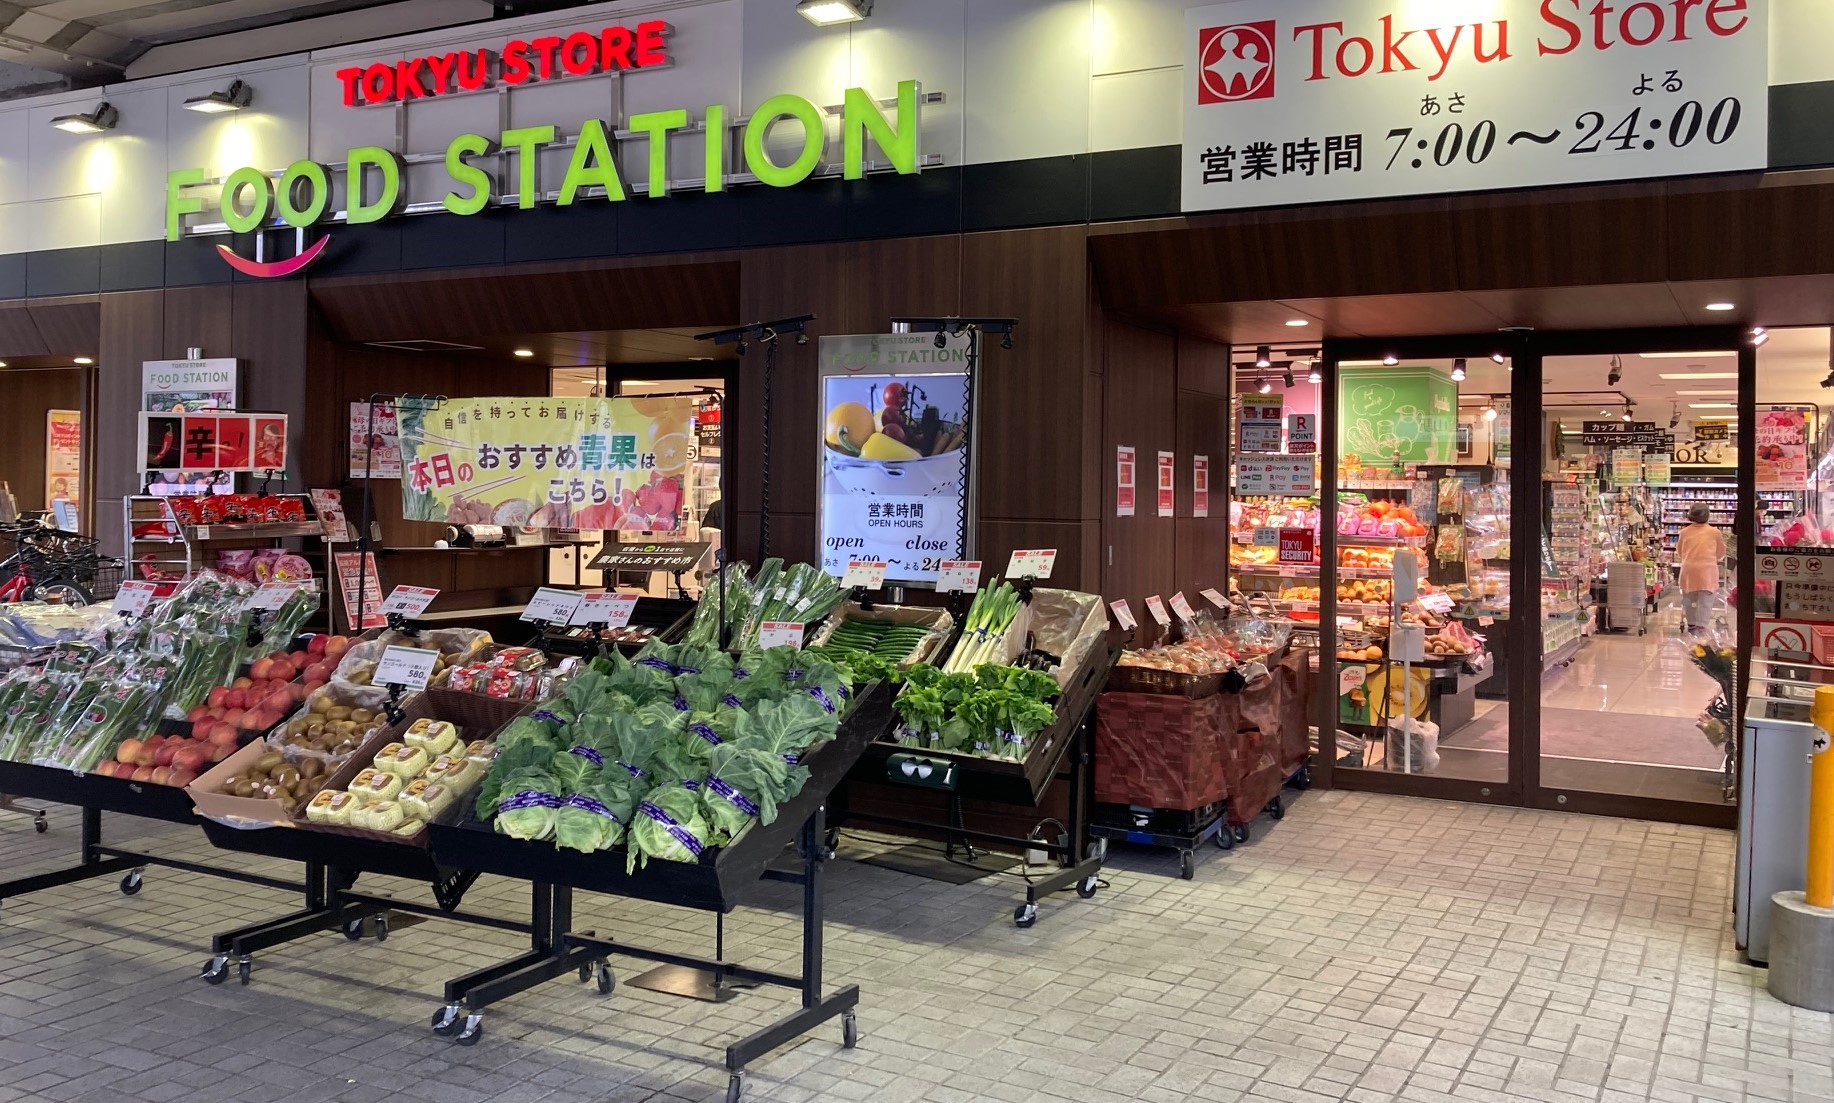 東急ストアフードステーション大倉山店